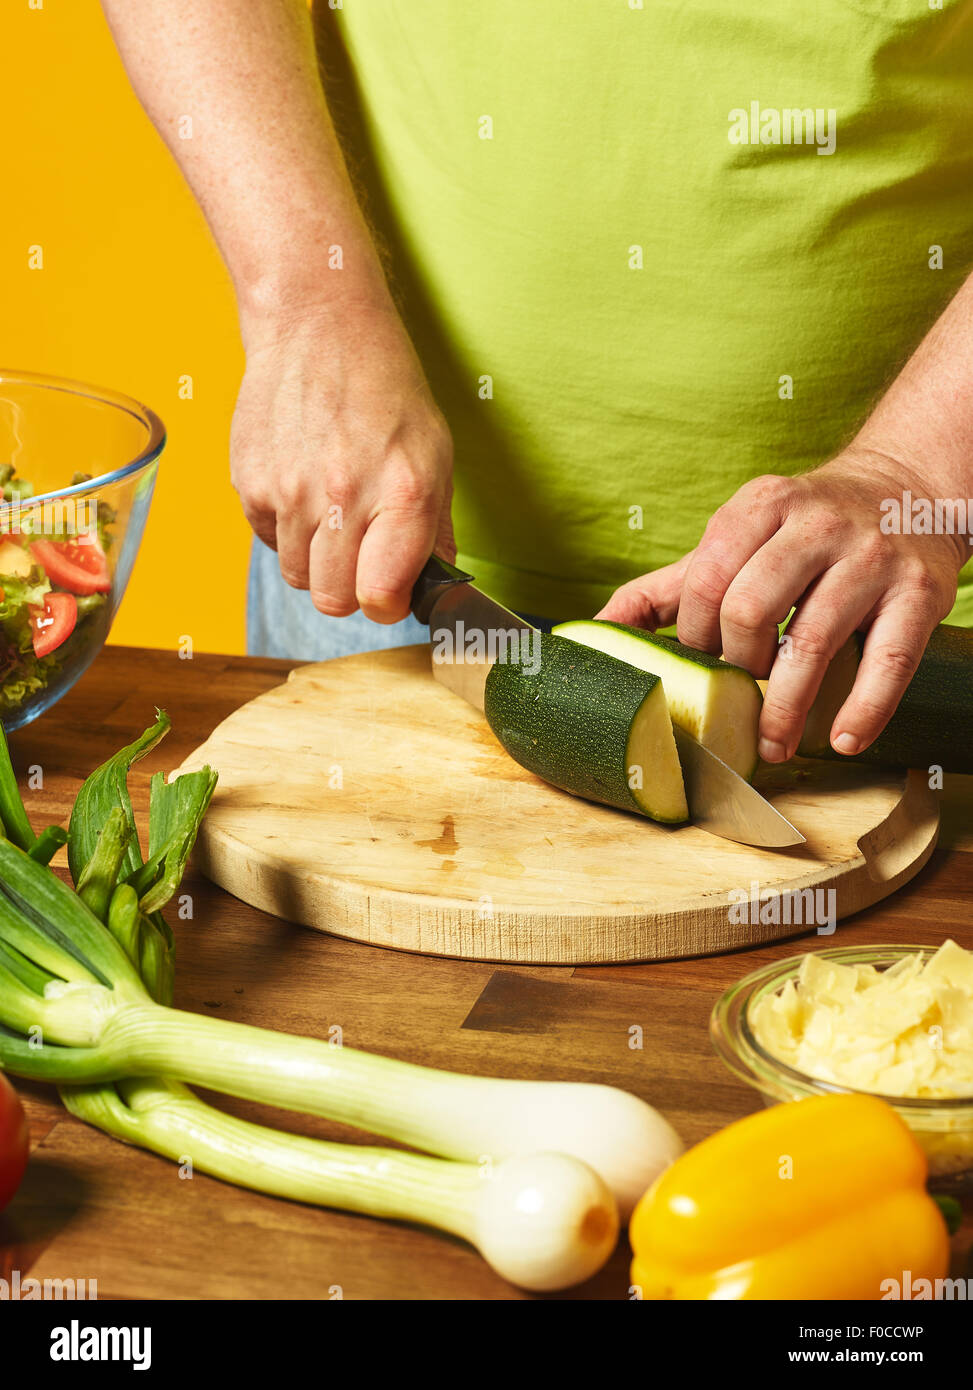 Insalata fresca ingredienti sul tavolo, uomo di mezza età taglia le zucchine - sfondo giallo Foto Stock